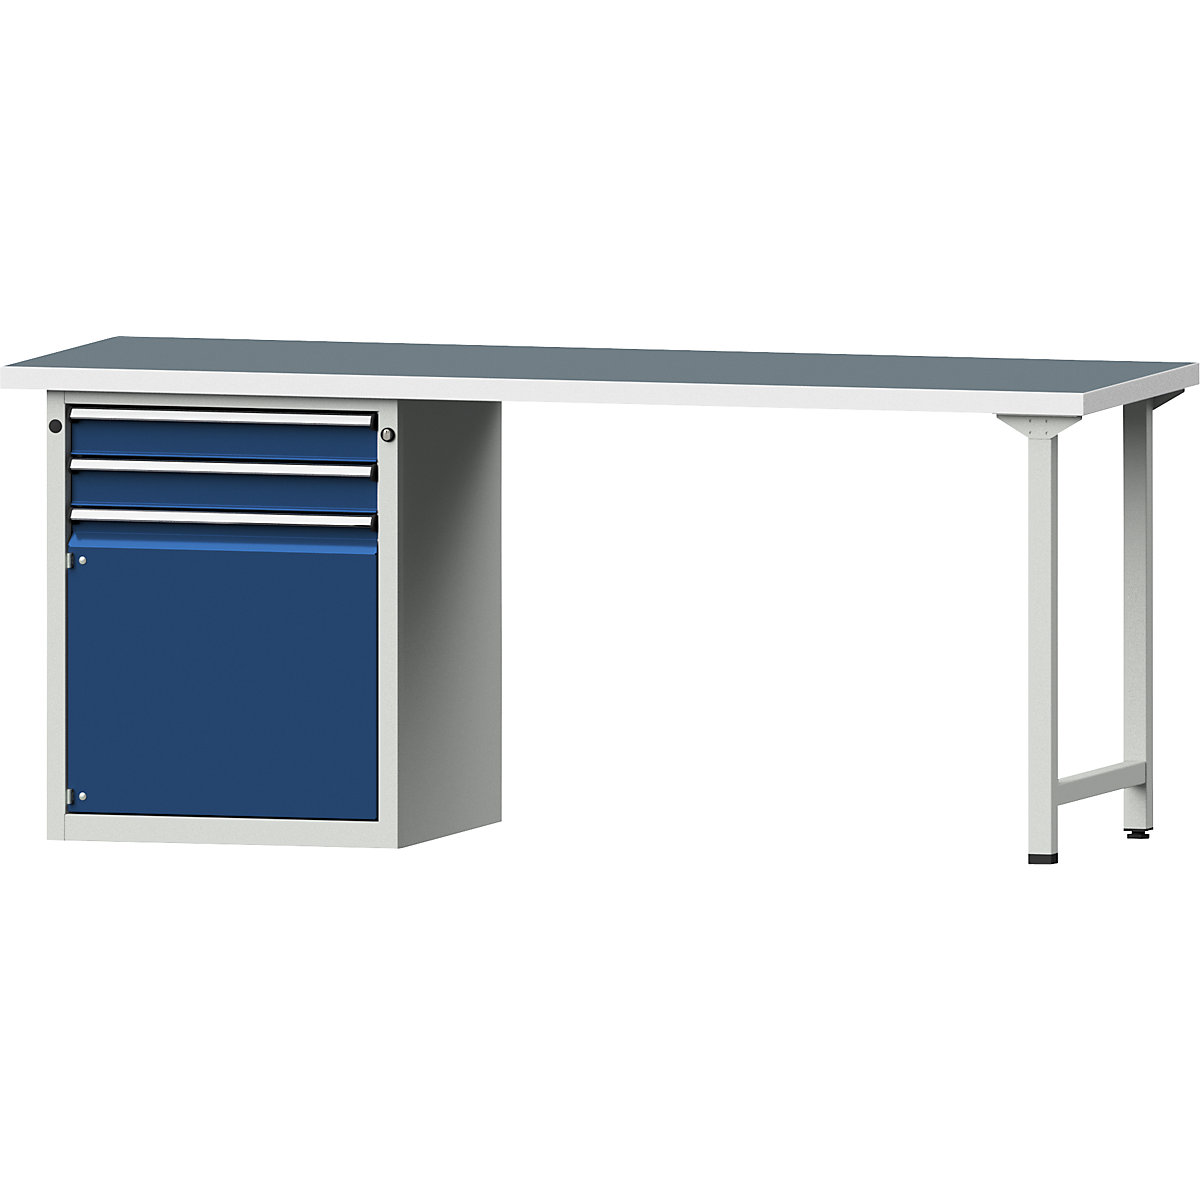 Dílenský stůl s rámovou konstrukcí – ANKE, 2 zásuvky, 1 dveře, univerzální deska, šířka 2000 mm